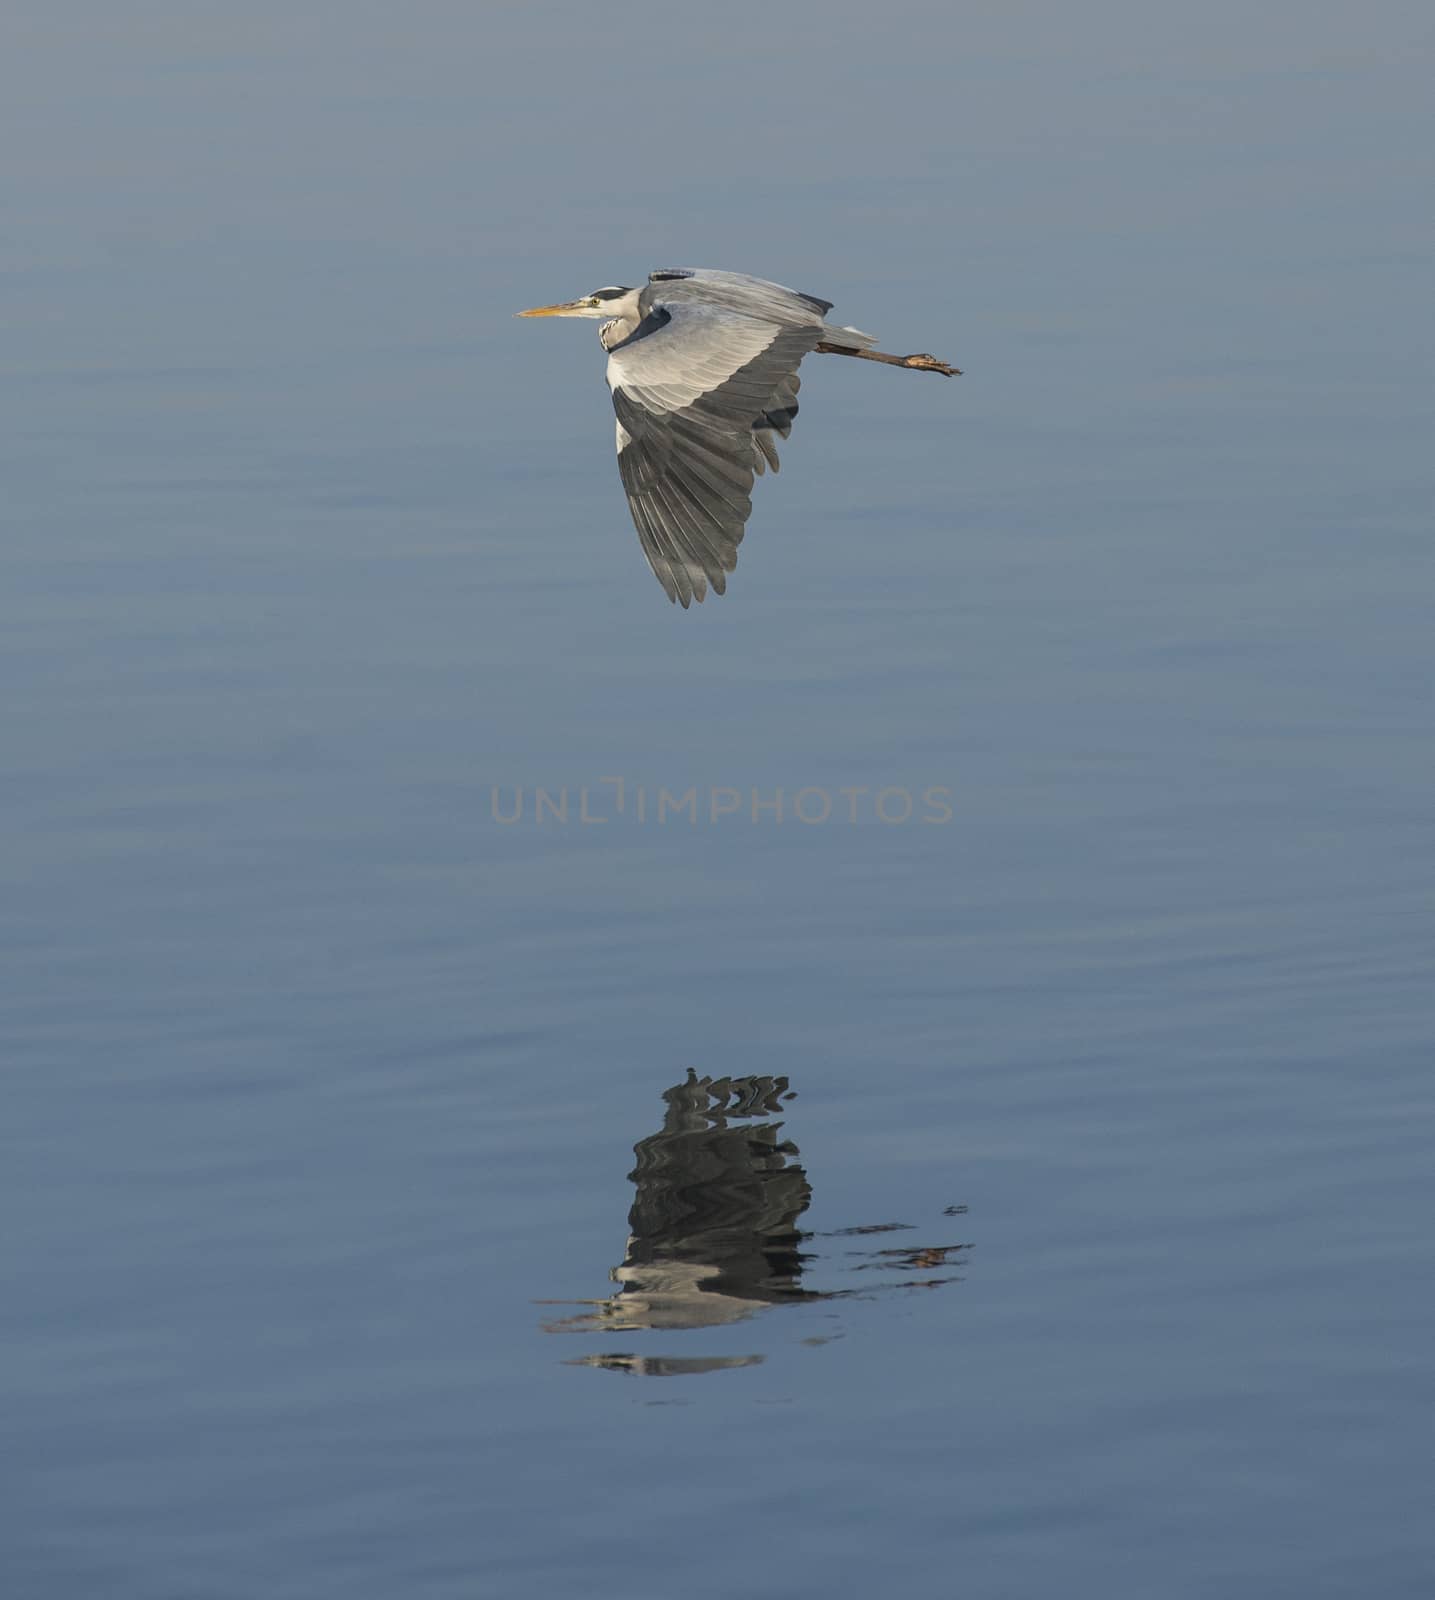 Grey heron in flight over rural river by paulvinten